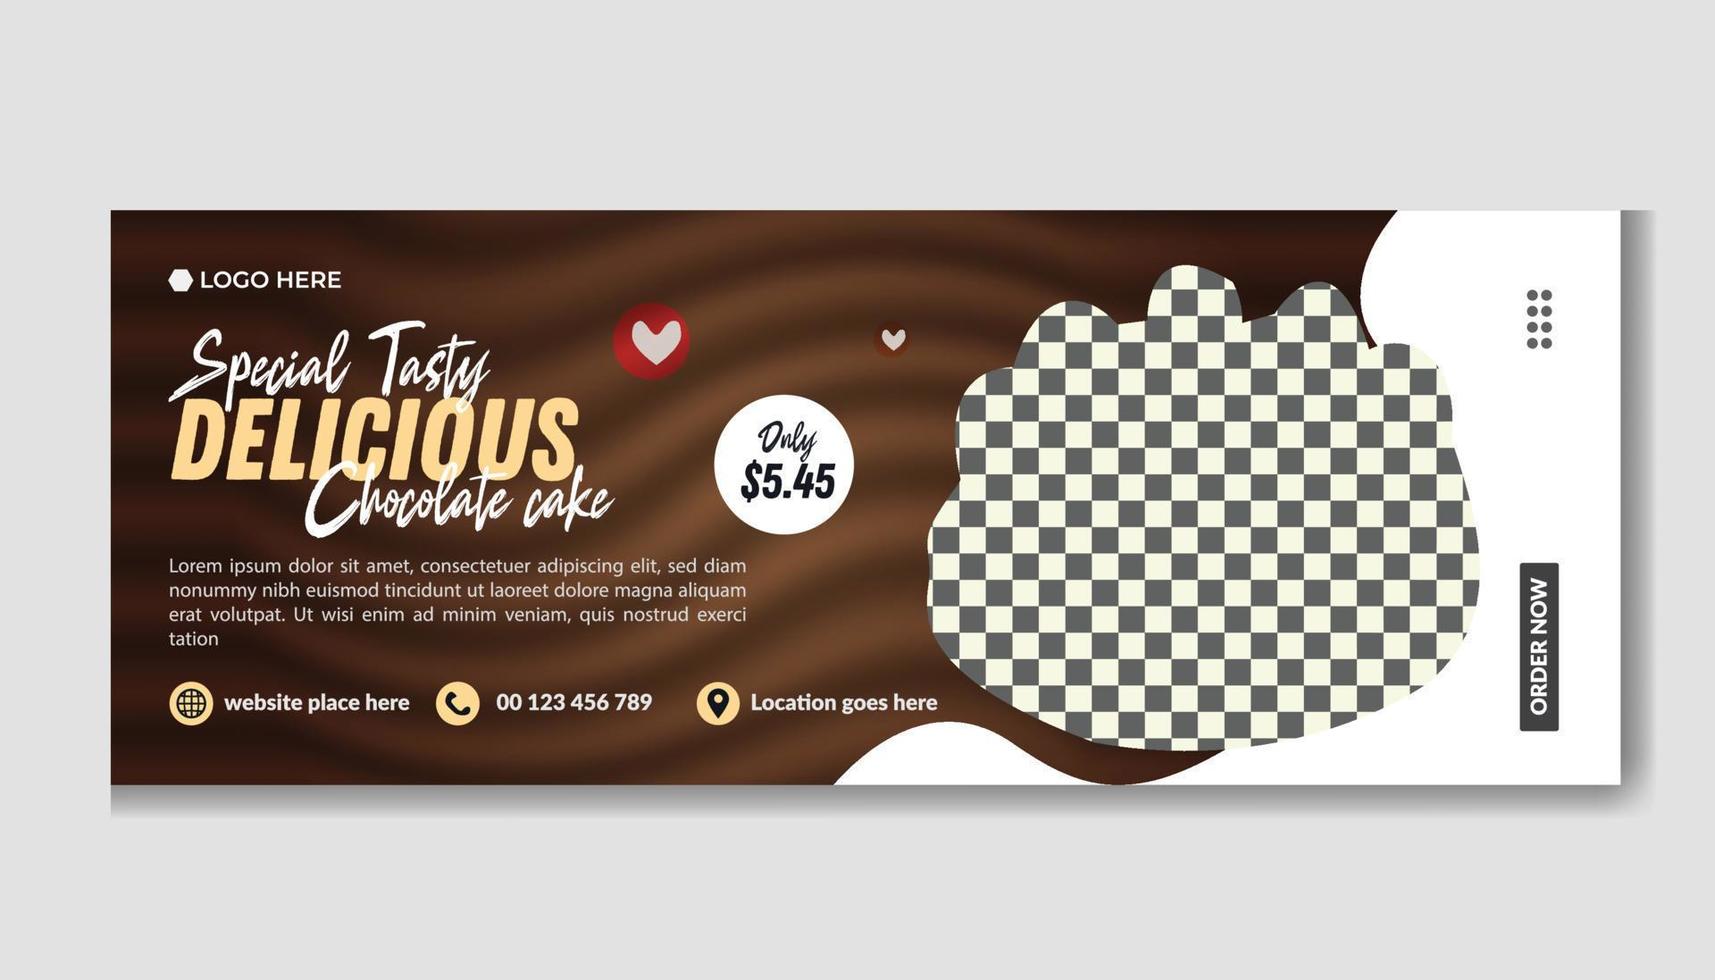 köstlich Schokolade Kuchen Zeitleiste Startseite oder Netz Banner Ö Sozial Medien Zeitleiste Startseite Design Vorlage vektor